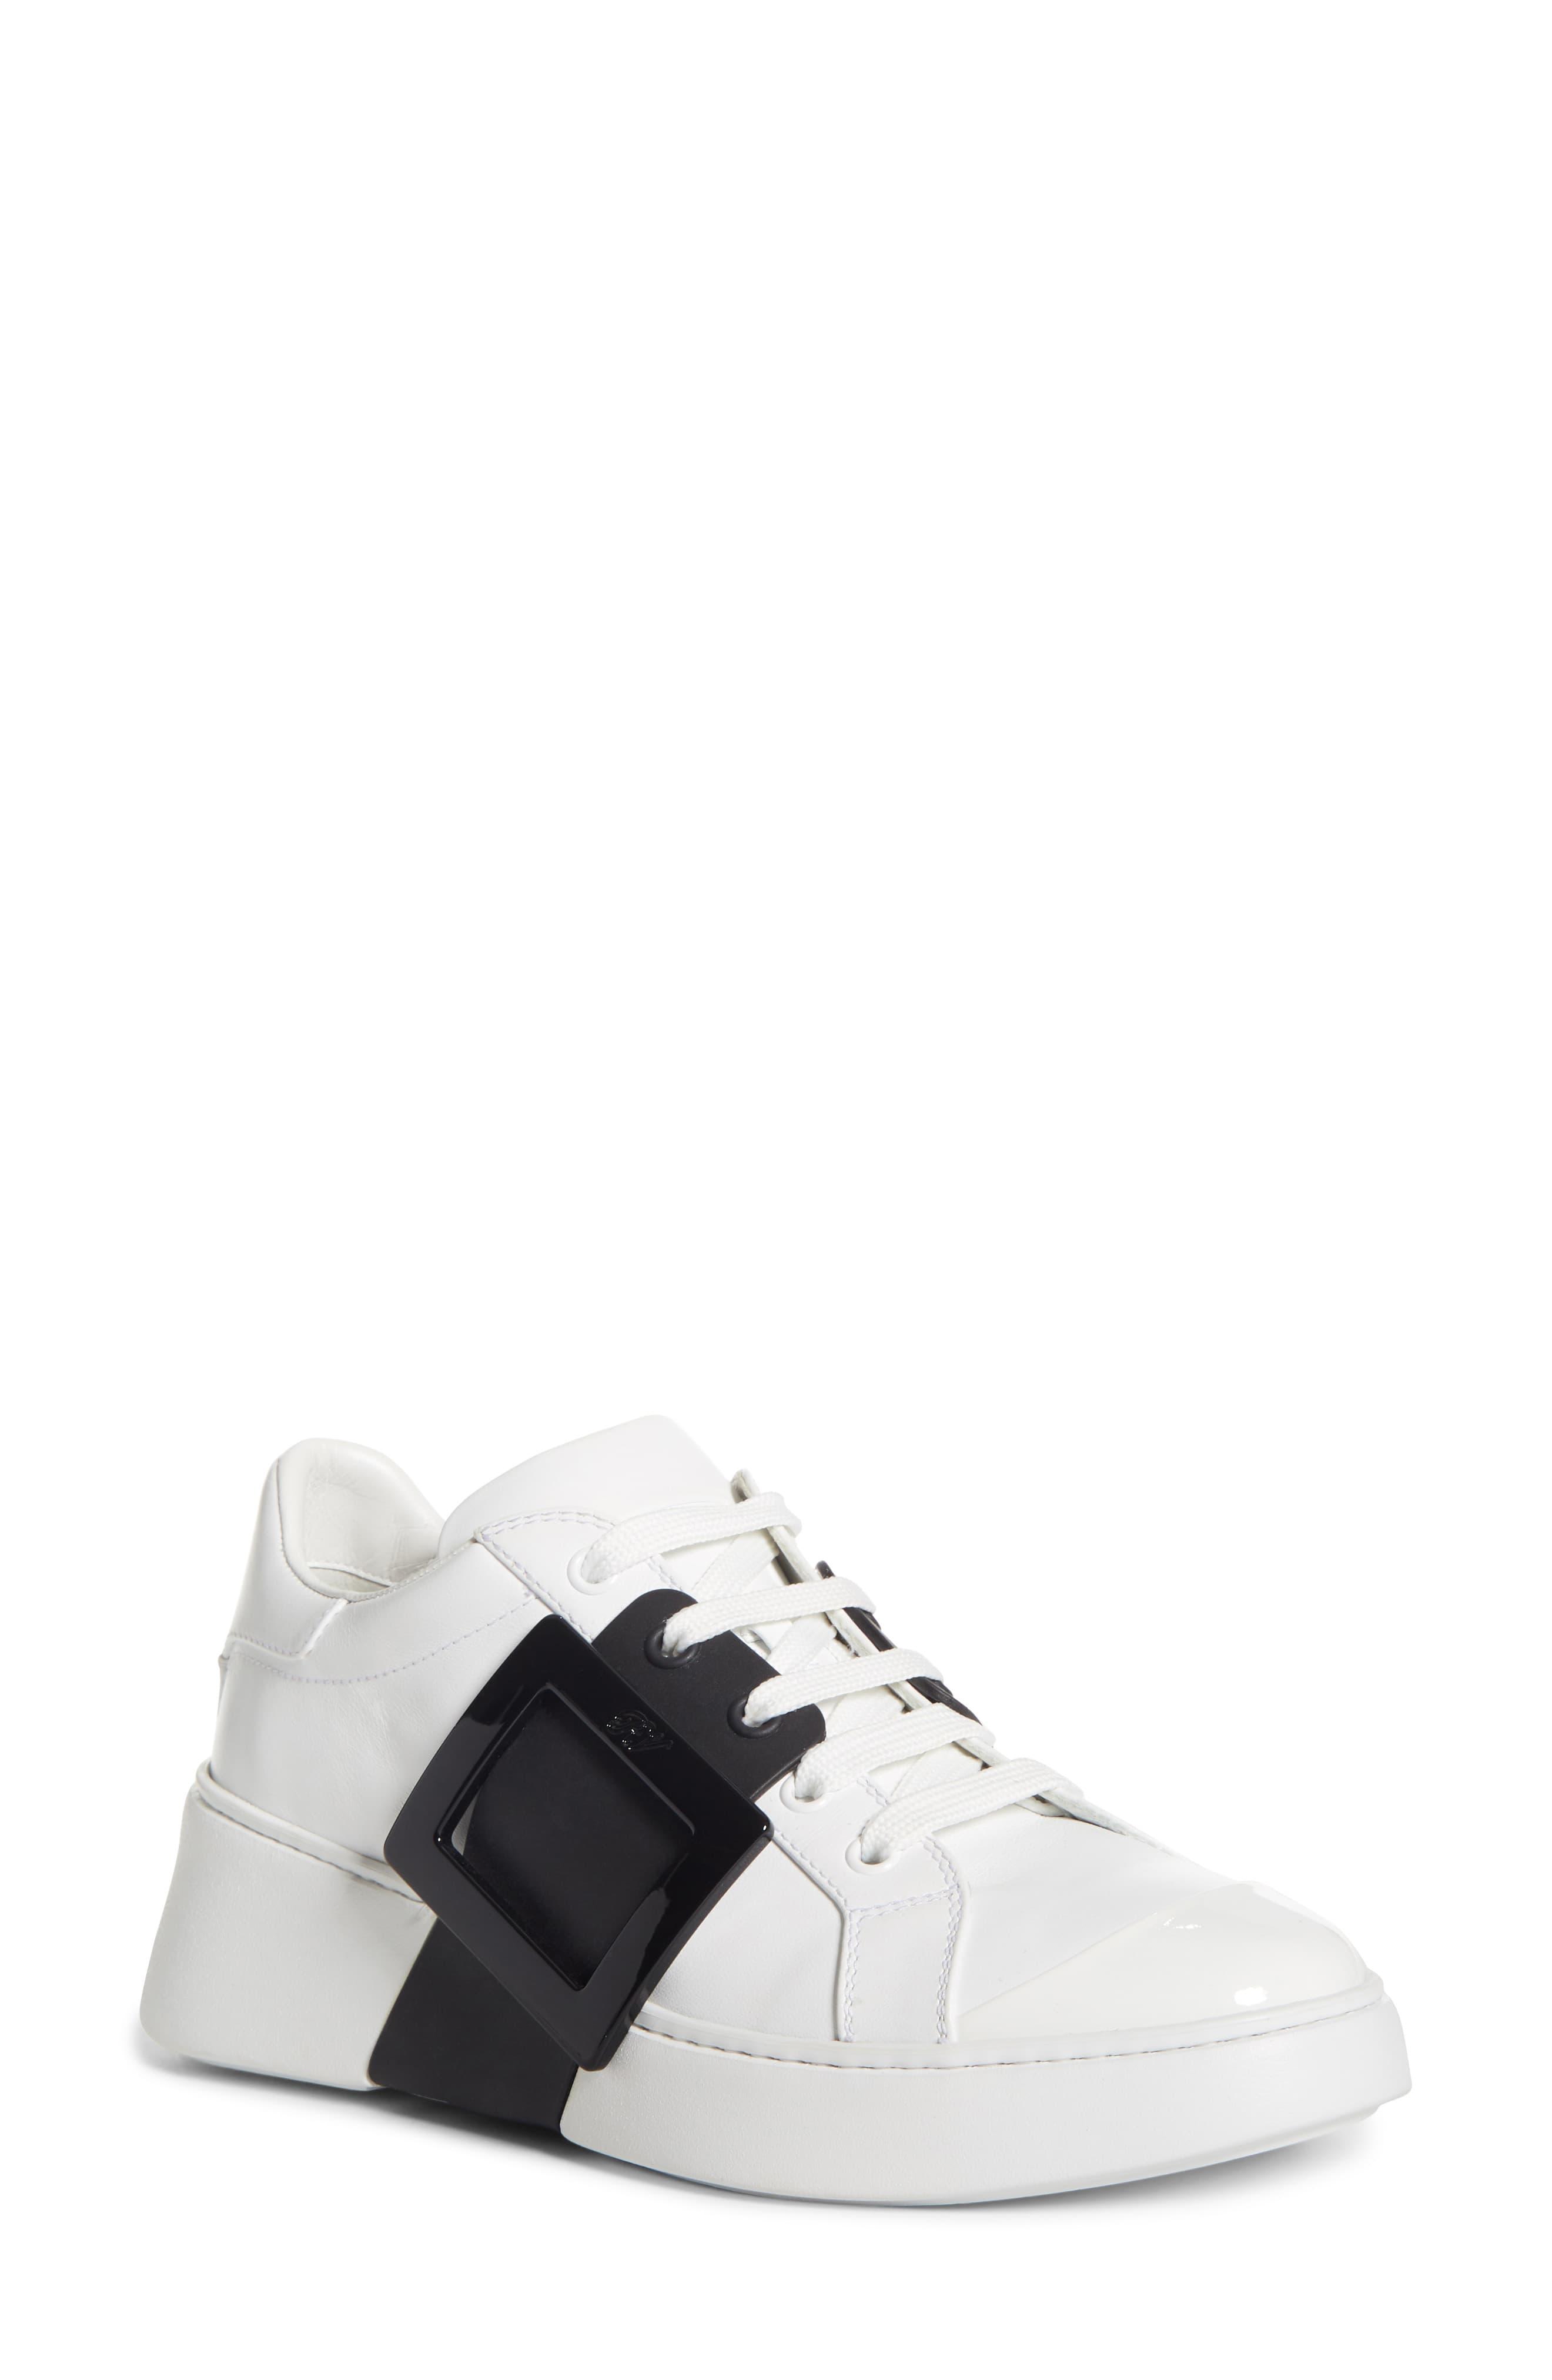 Roger Vivier Viv Buckle Skate Sneaker in White/ Black (White) - Lyst